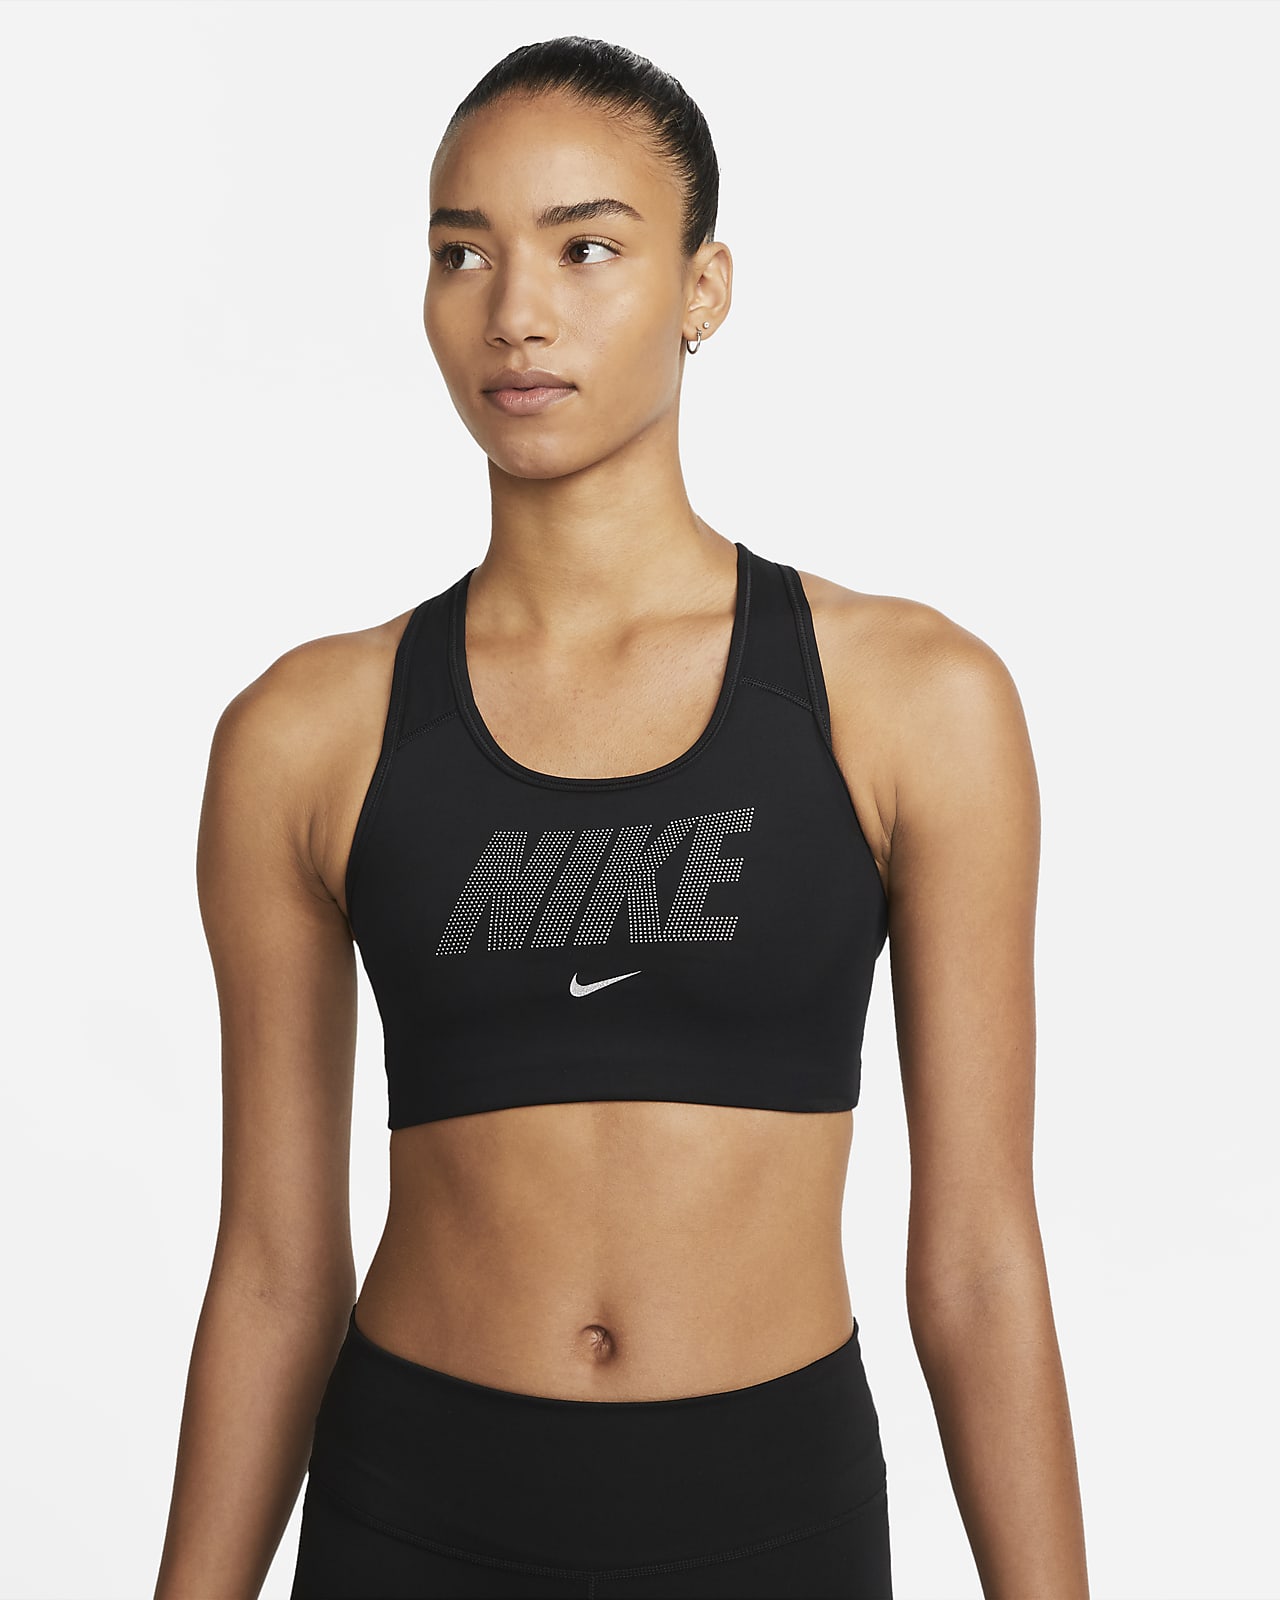 Bra non imbottito a sostegno medio con grafica metallizzata Nike Dri-FIT Swoosh - Donna